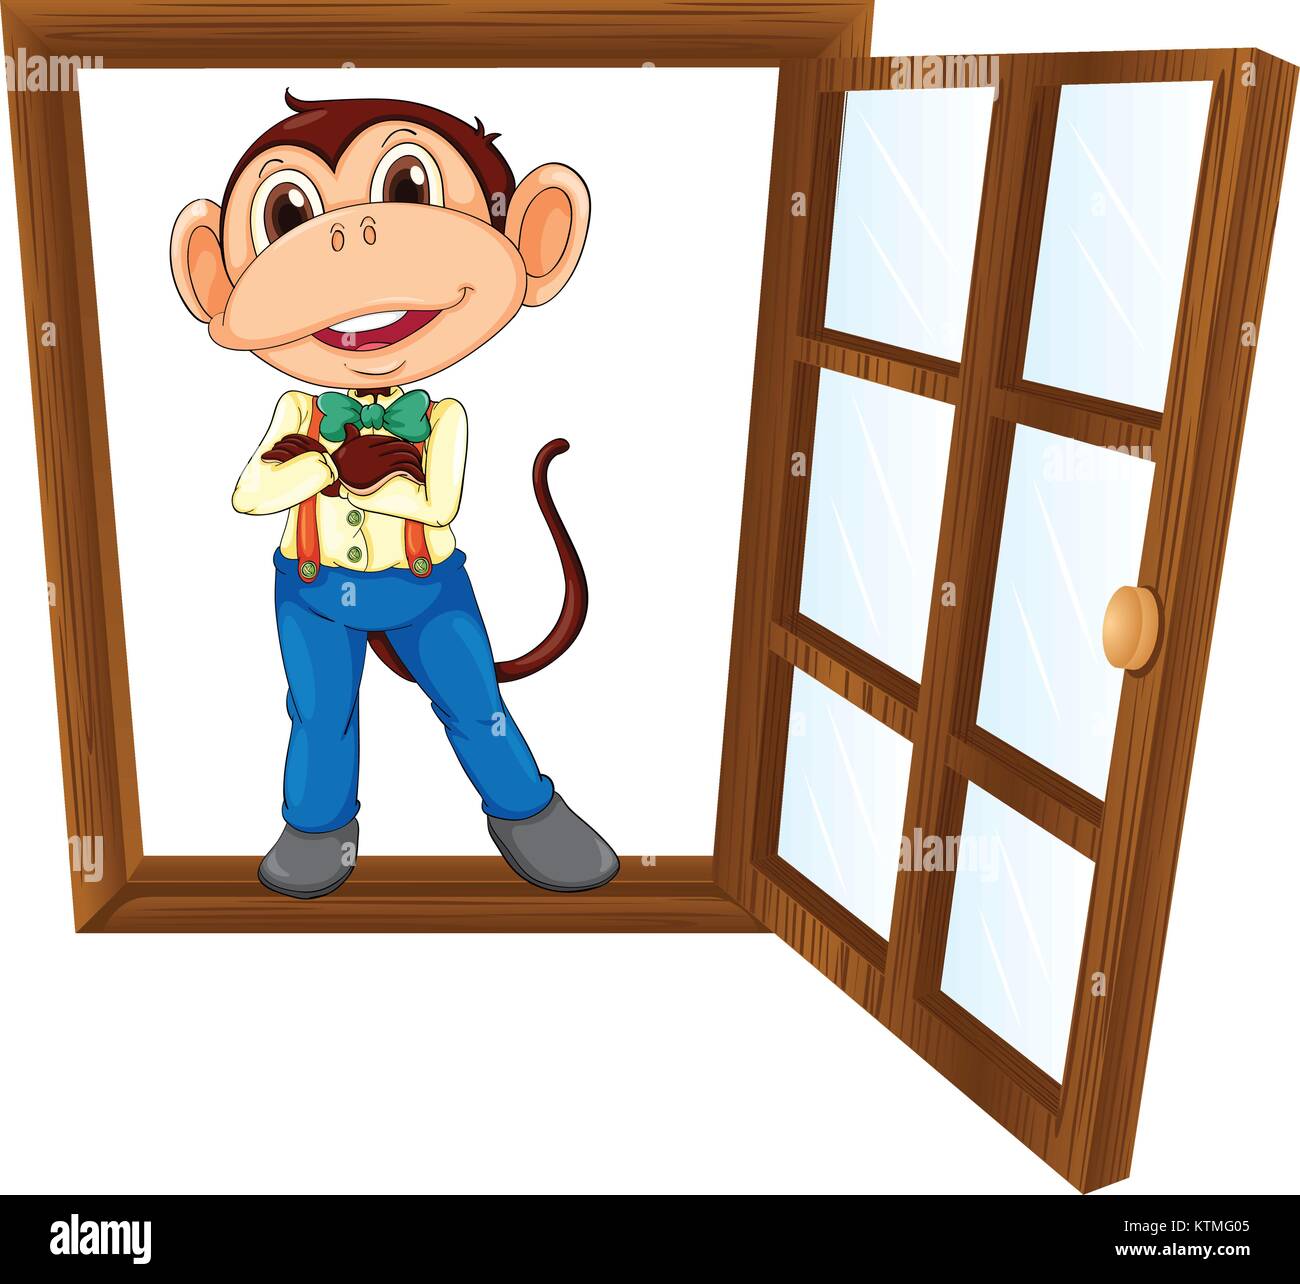 Illustrazione dettagliata di una scimmia in una finestra Illustrazione Vettoriale